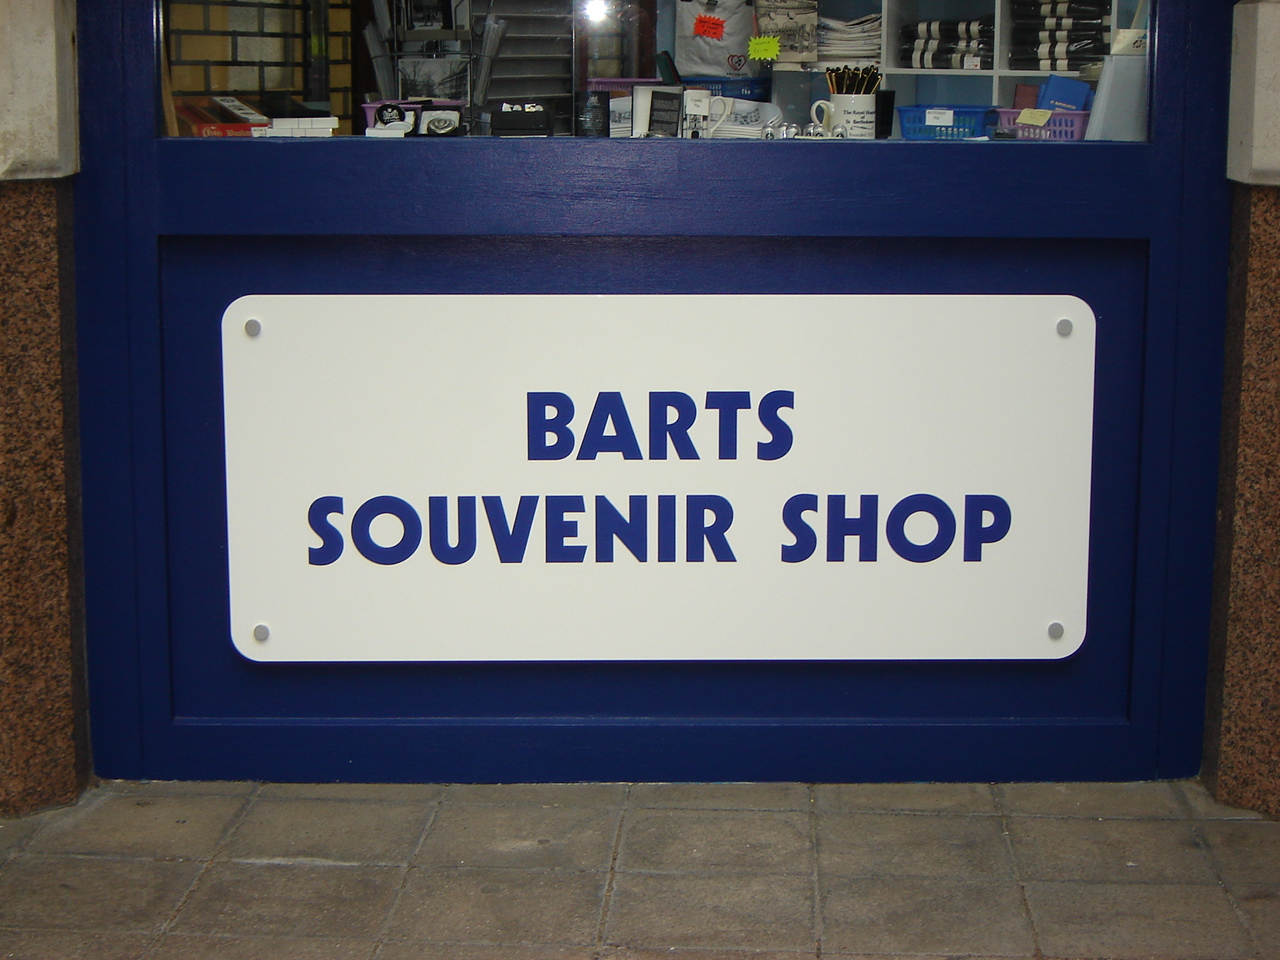 acrylic shop sign